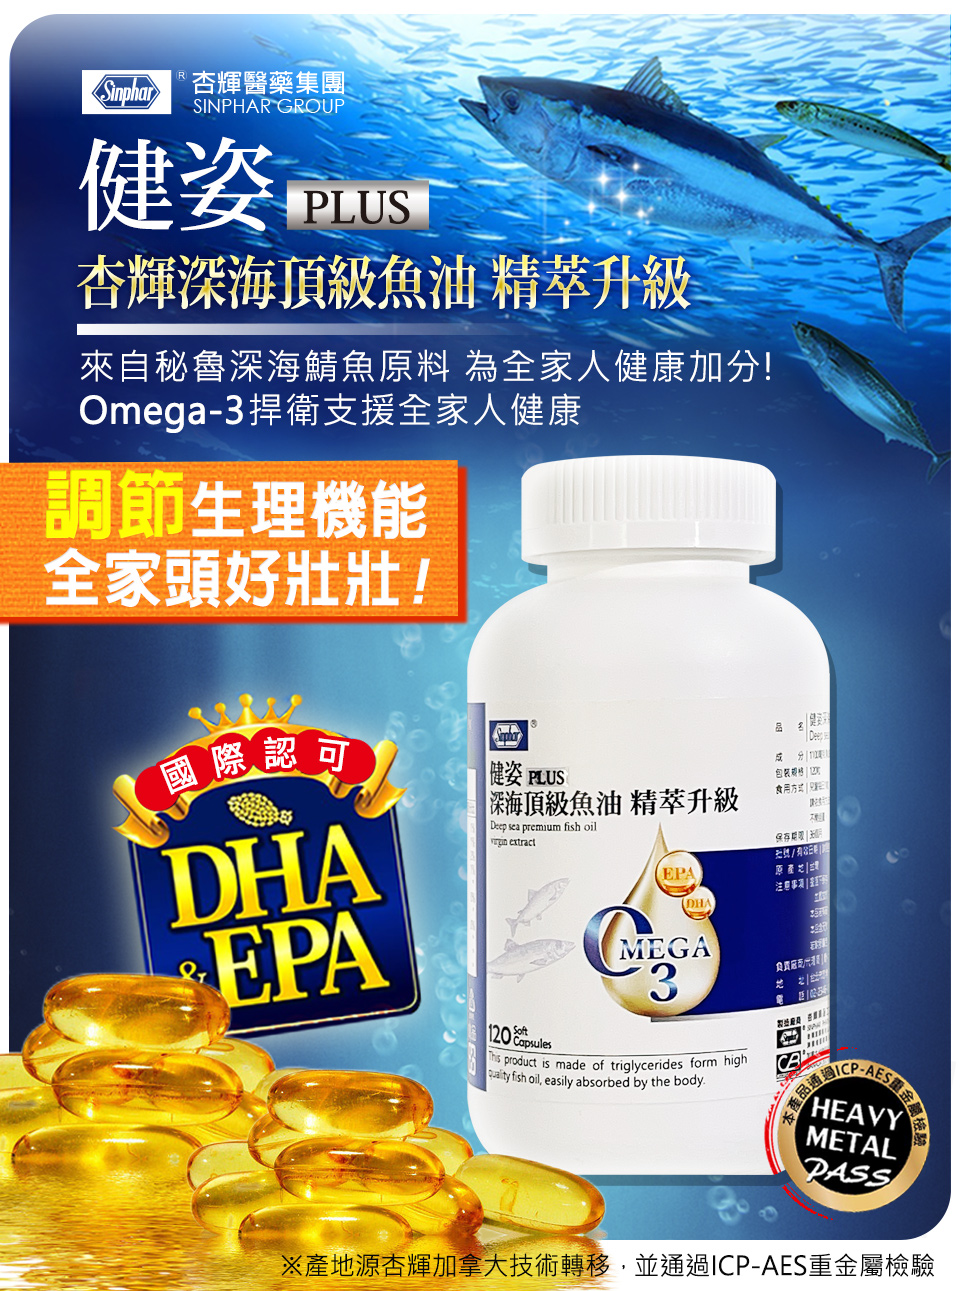 【杏輝】健姿 深海頂級魚油精萃升級版(120粒/盒) 高穩定好吸收 精純鯖魚油